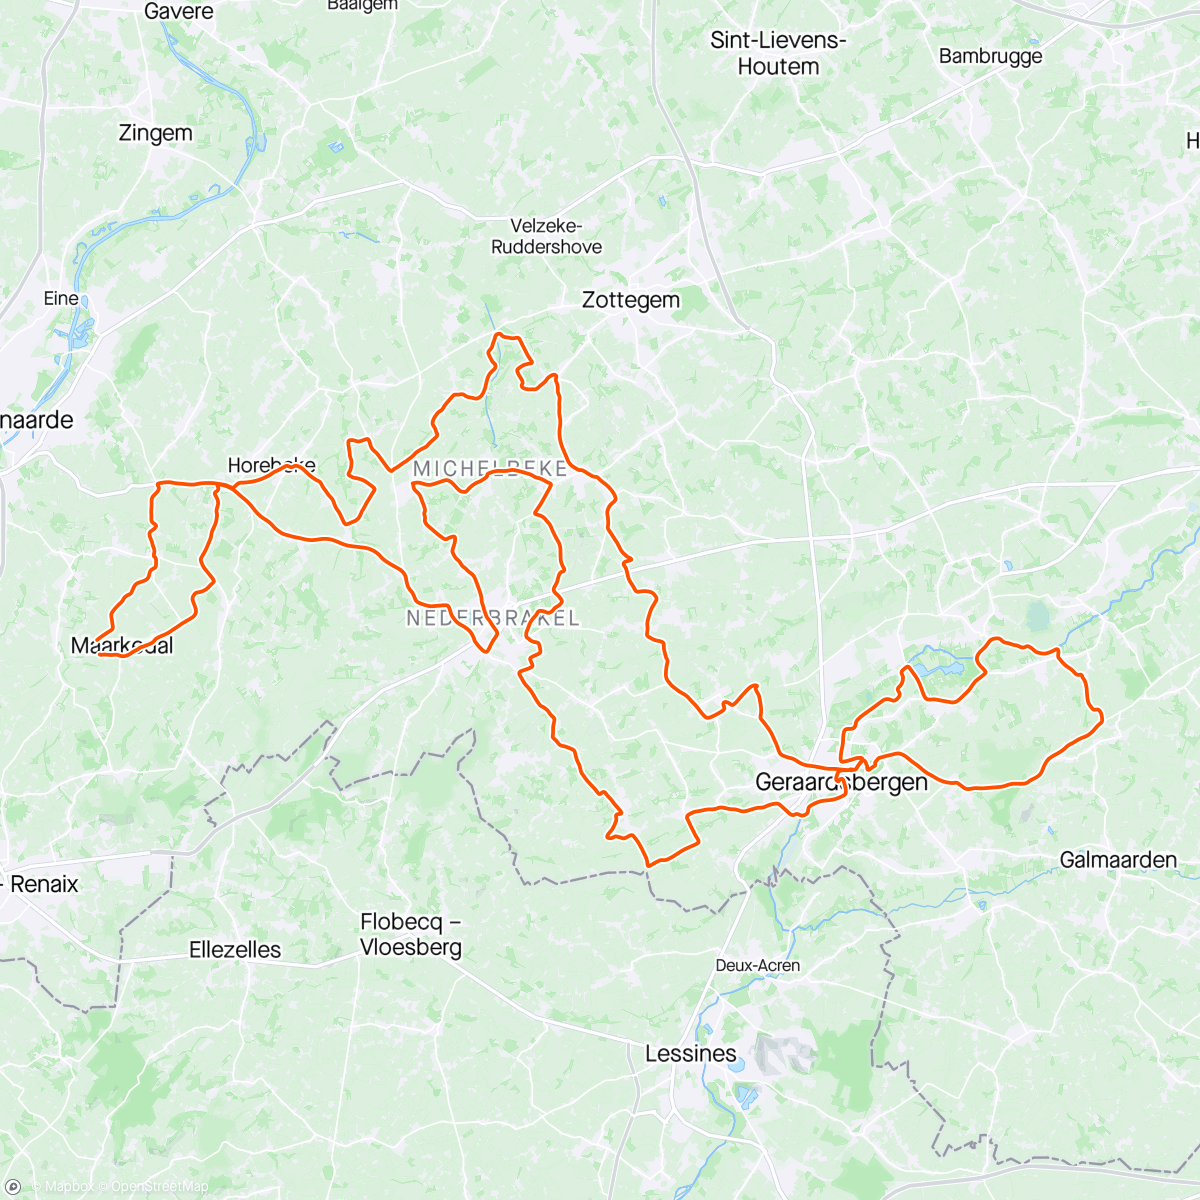 Map of the activity, Flanders day 3 - Geraardsbegen